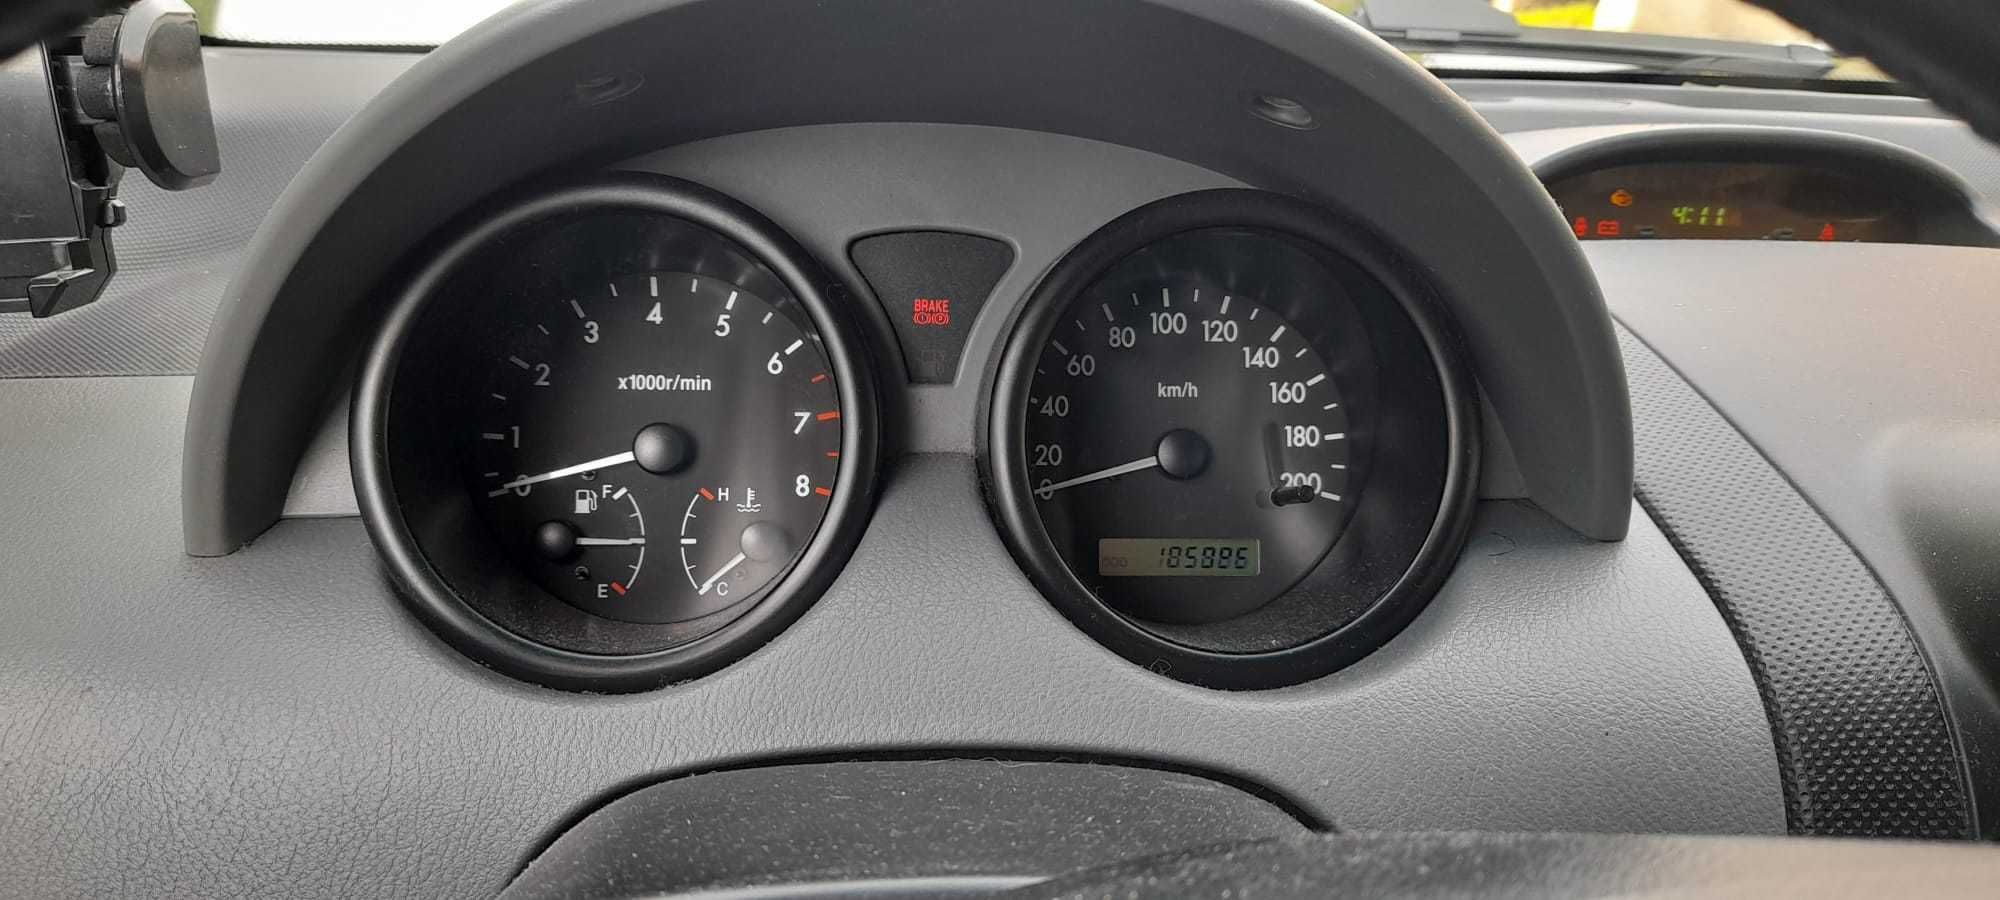 Daewoo Kalos 2004 1.4 benzyna, klimatyzacja, alufelgi